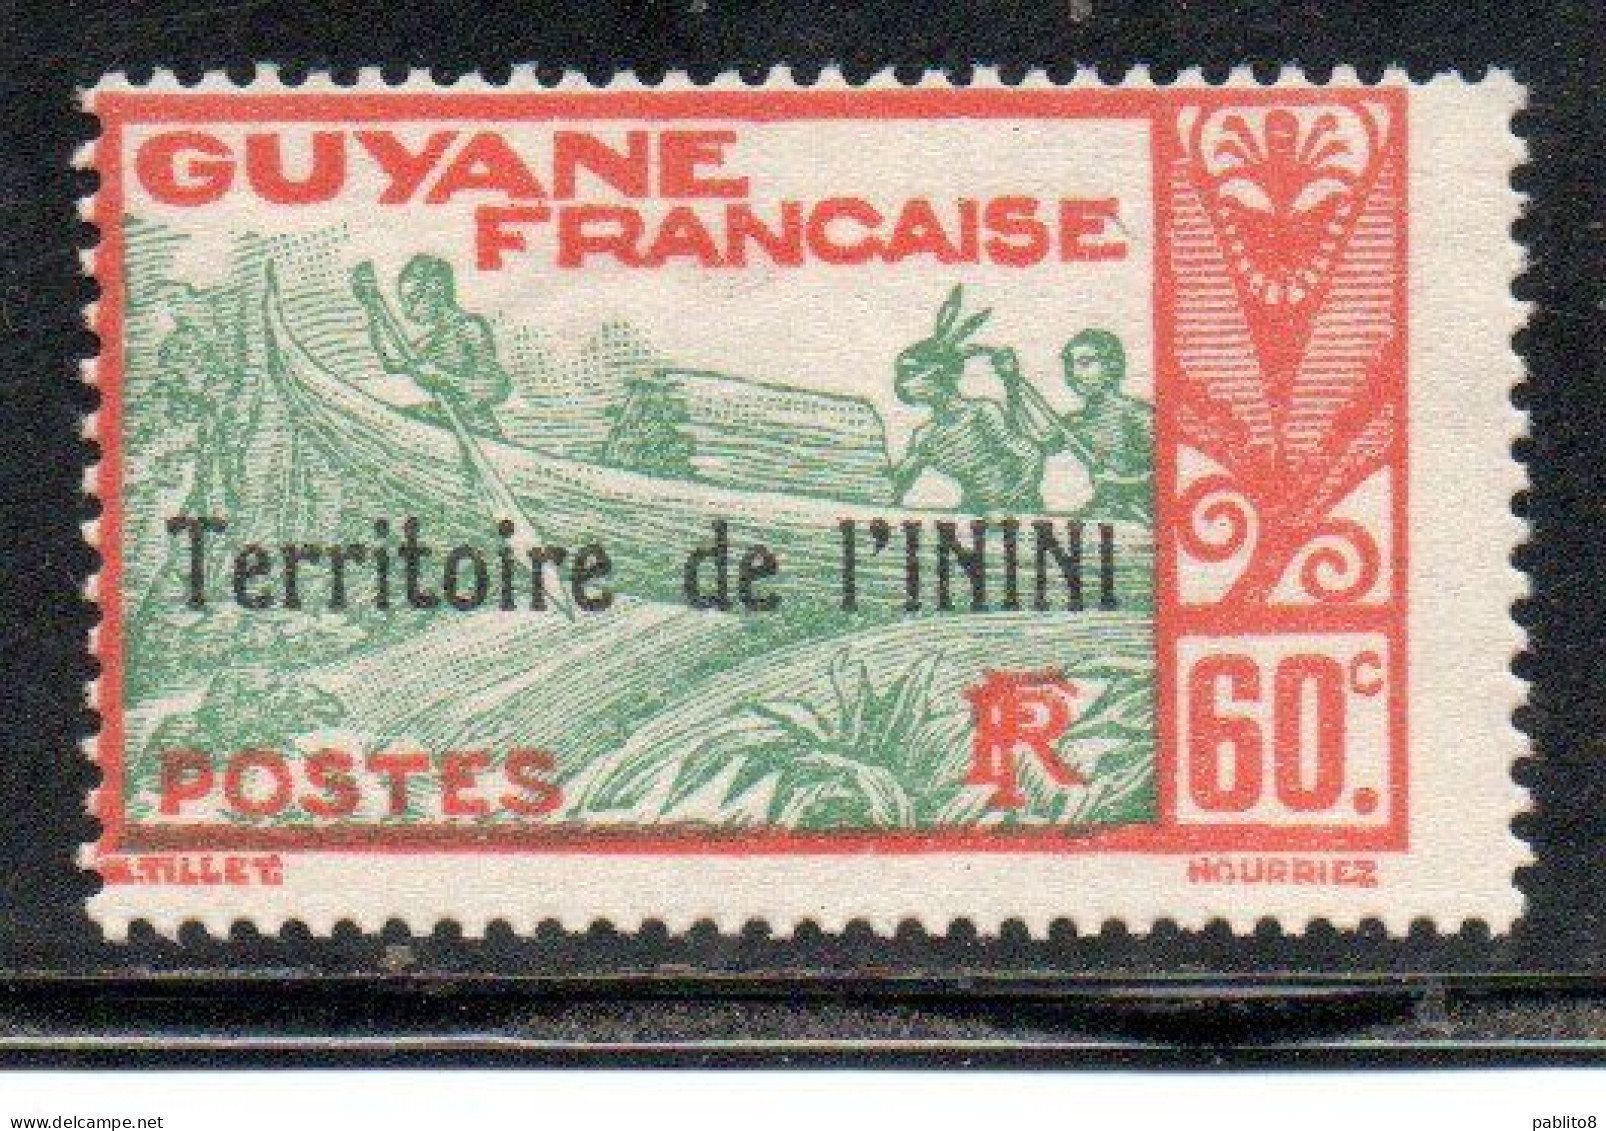 GUYANE FRANCAISE TERRITOIRE DE L'ININI OVERPRINTED SURCHARGE 1932 1940 SHOOTING RAPIDS MARONI RIVER 60c MNH - Ongebruikt